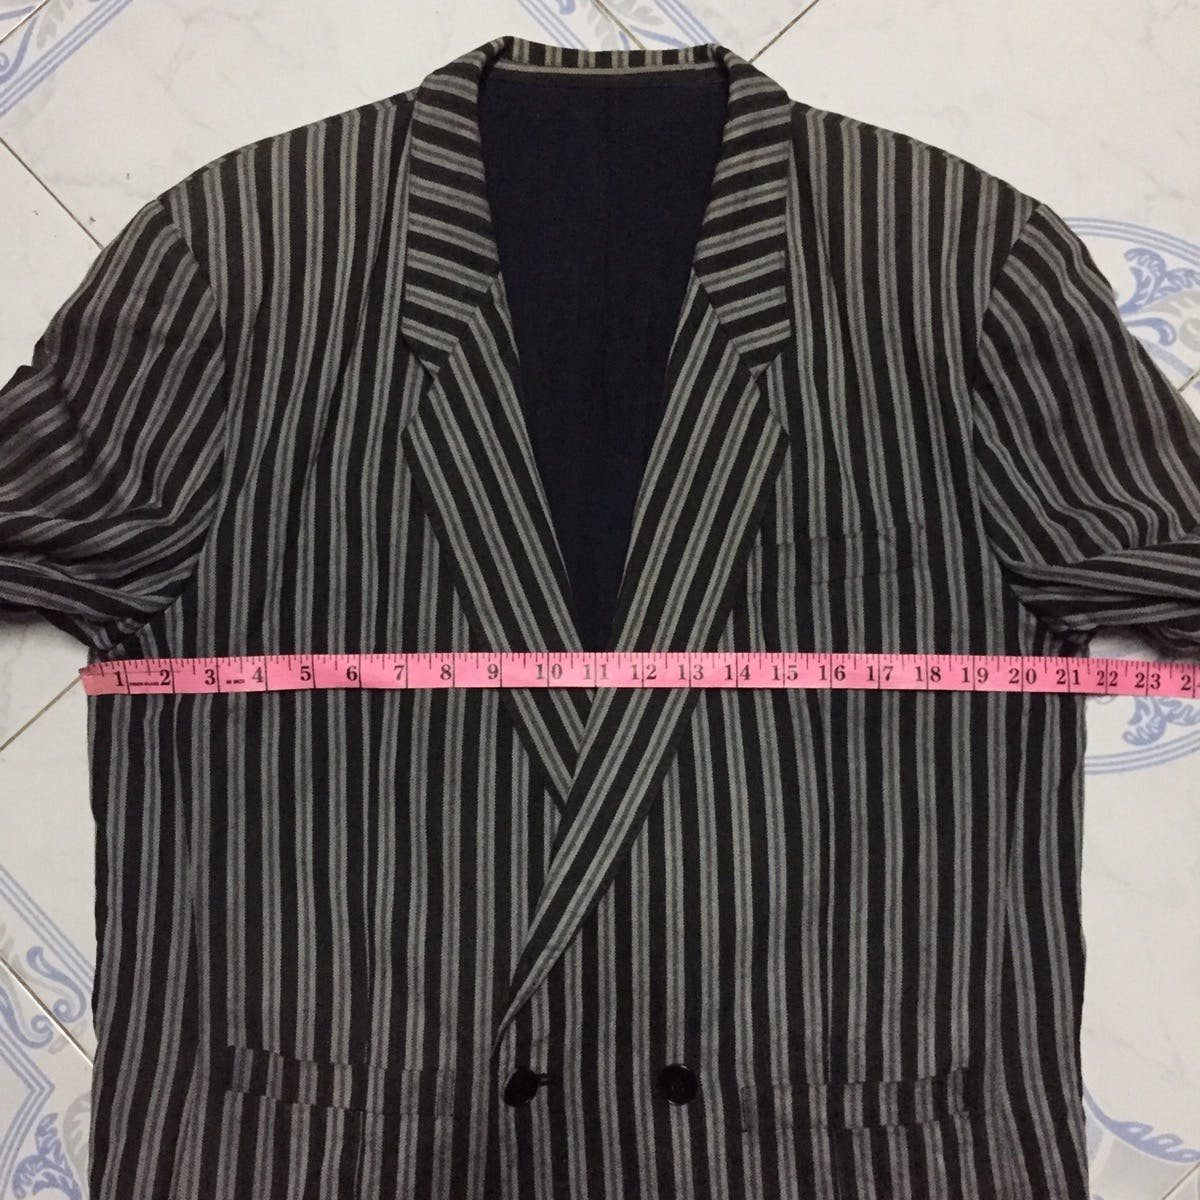 Kenzo Zebra Stripes Jacket Coat Made in Japan - 22